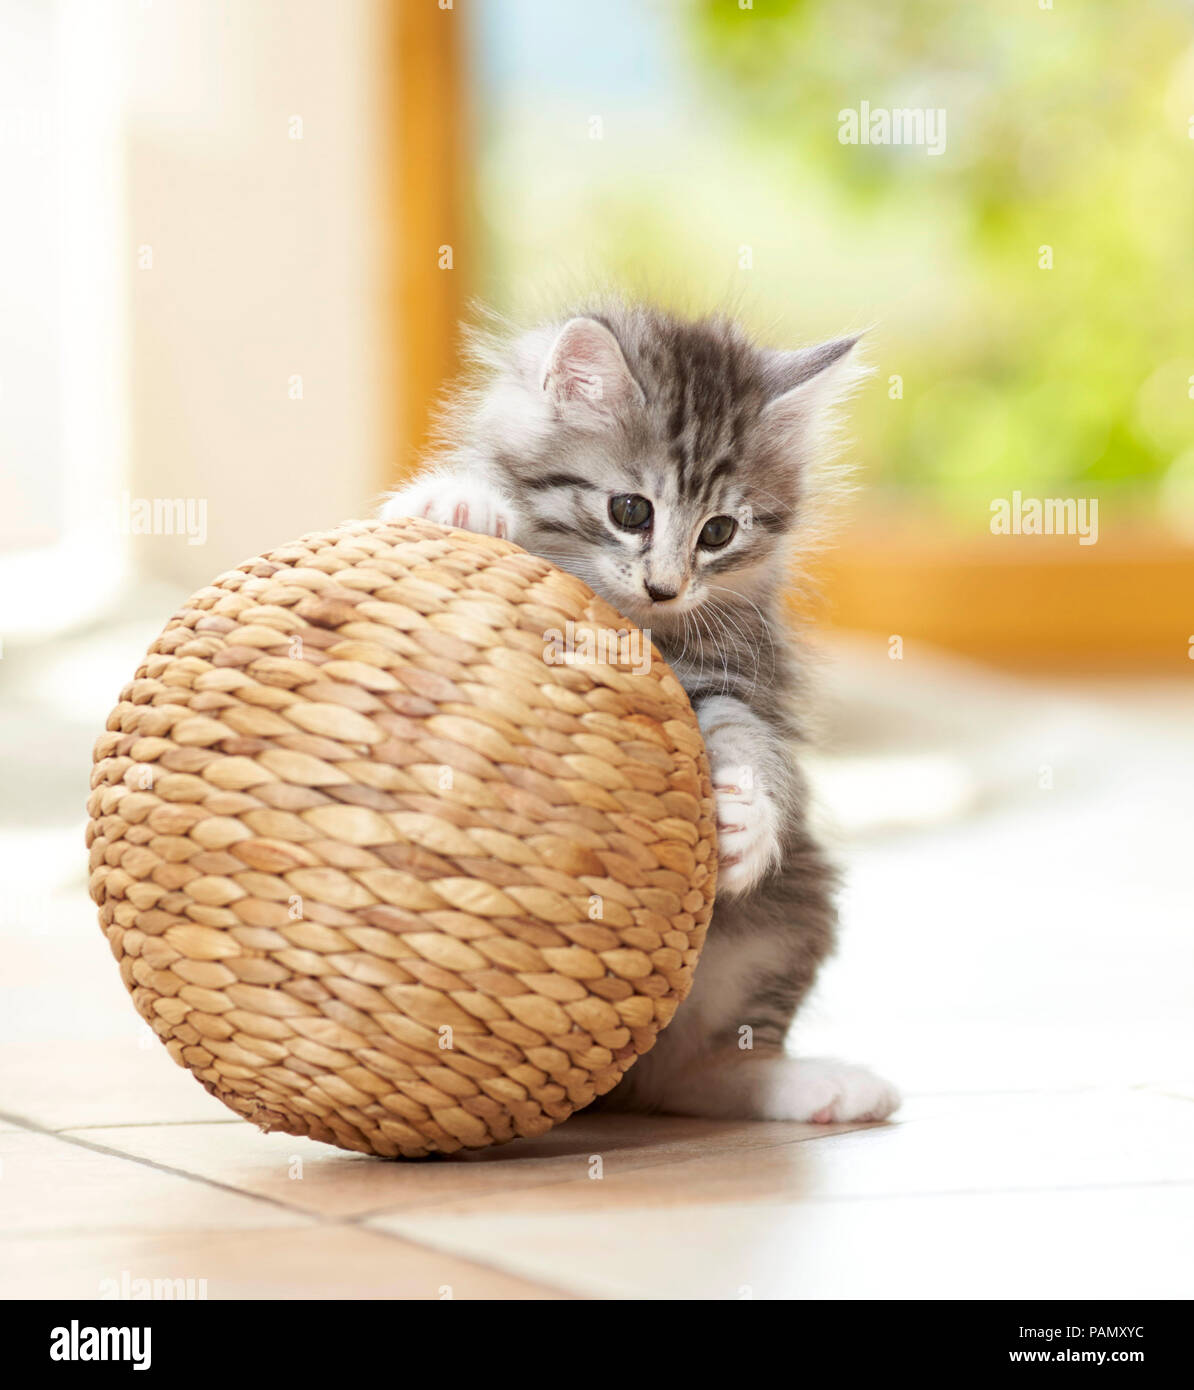 Bosque de Noruega Cat. Gatito jugando con un balón. Alemania Foto de stock